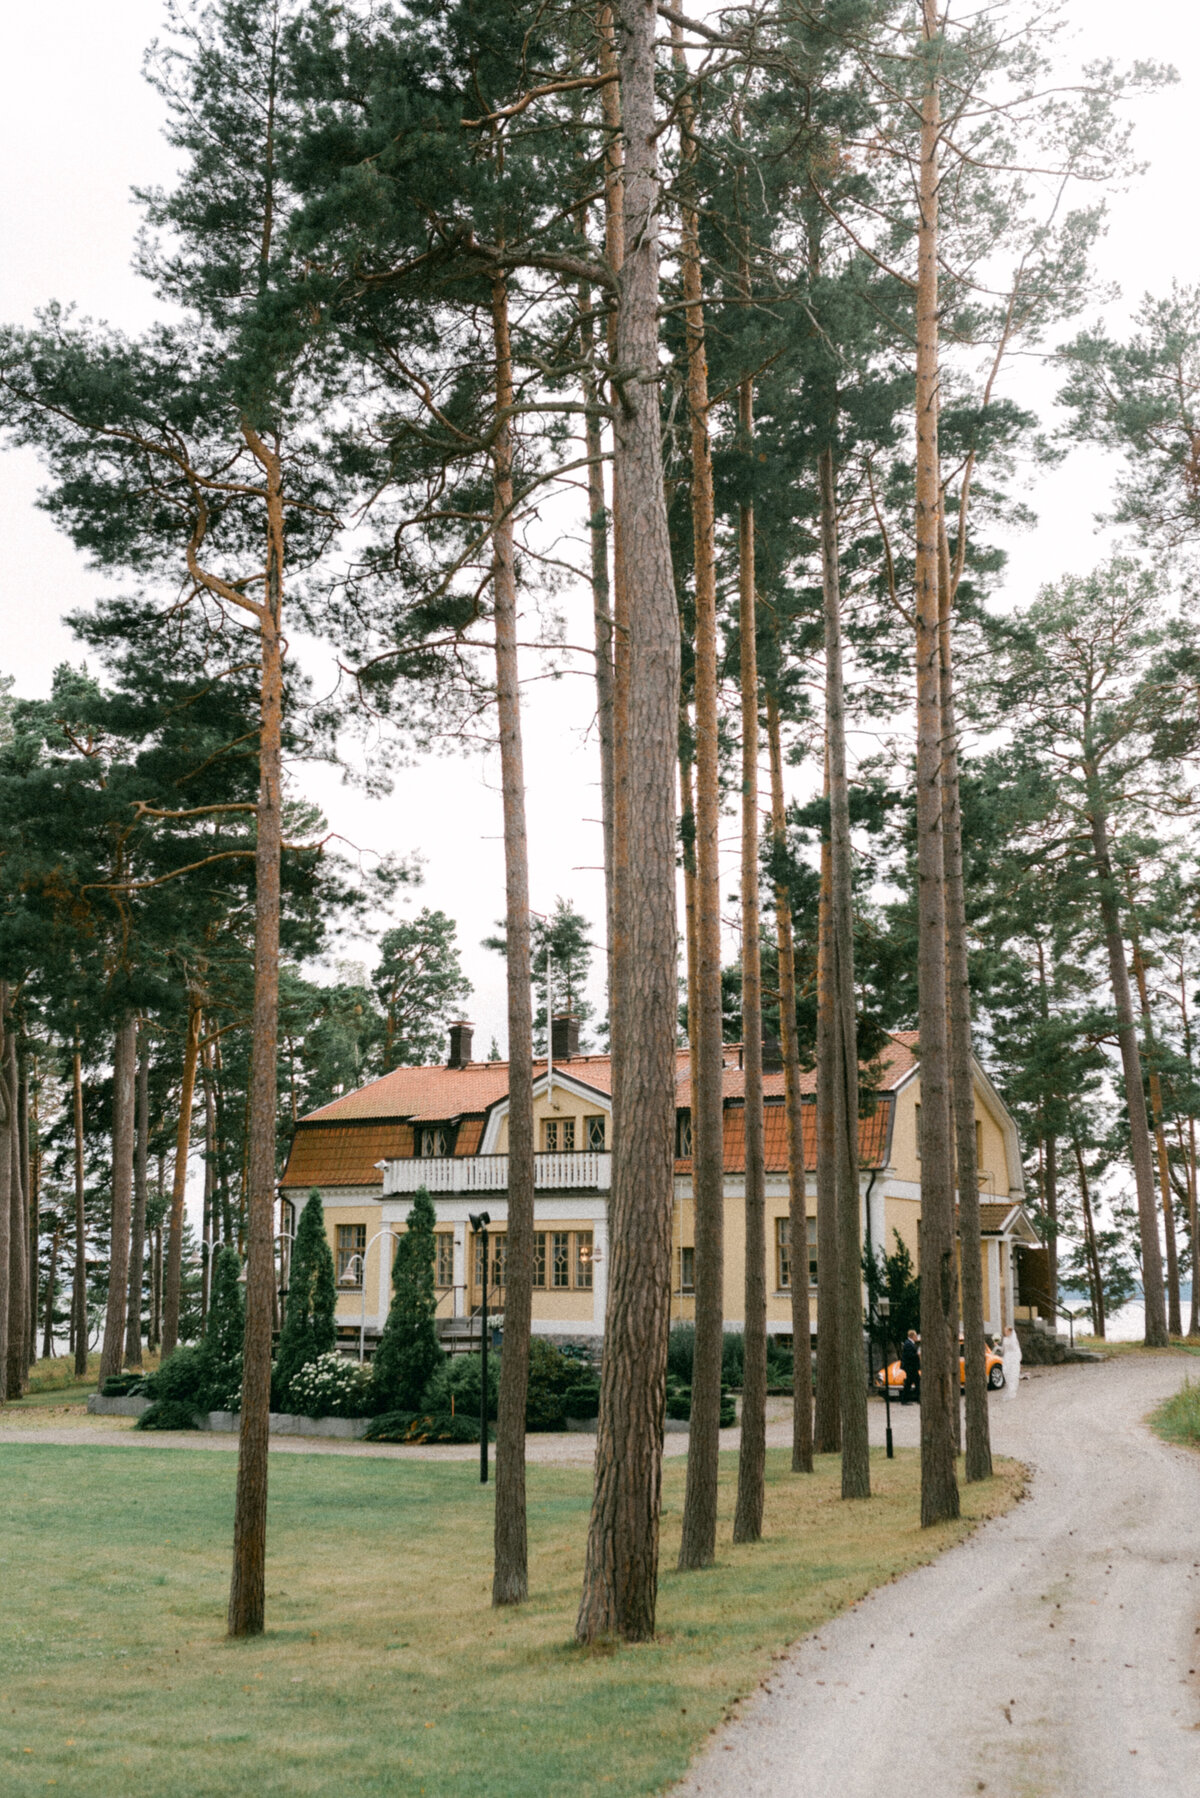 Image of a wedding venue Airisniemen kartano in Turku by wedding photographer Hannika Gabrielsson